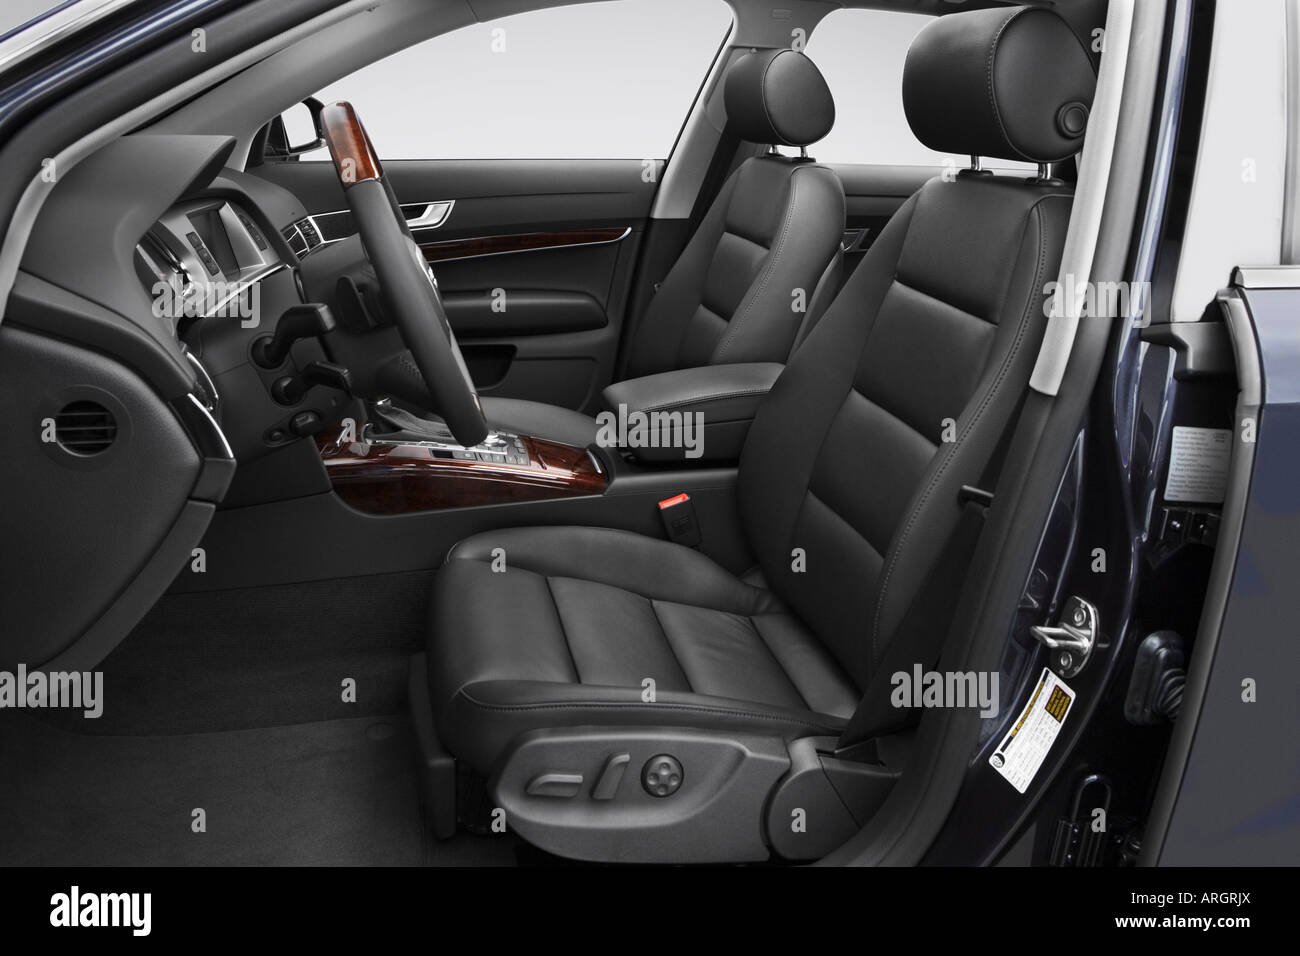 2007 Audi A6 Avant 3.2 quattro en gris - sièges avant Banque D'Images